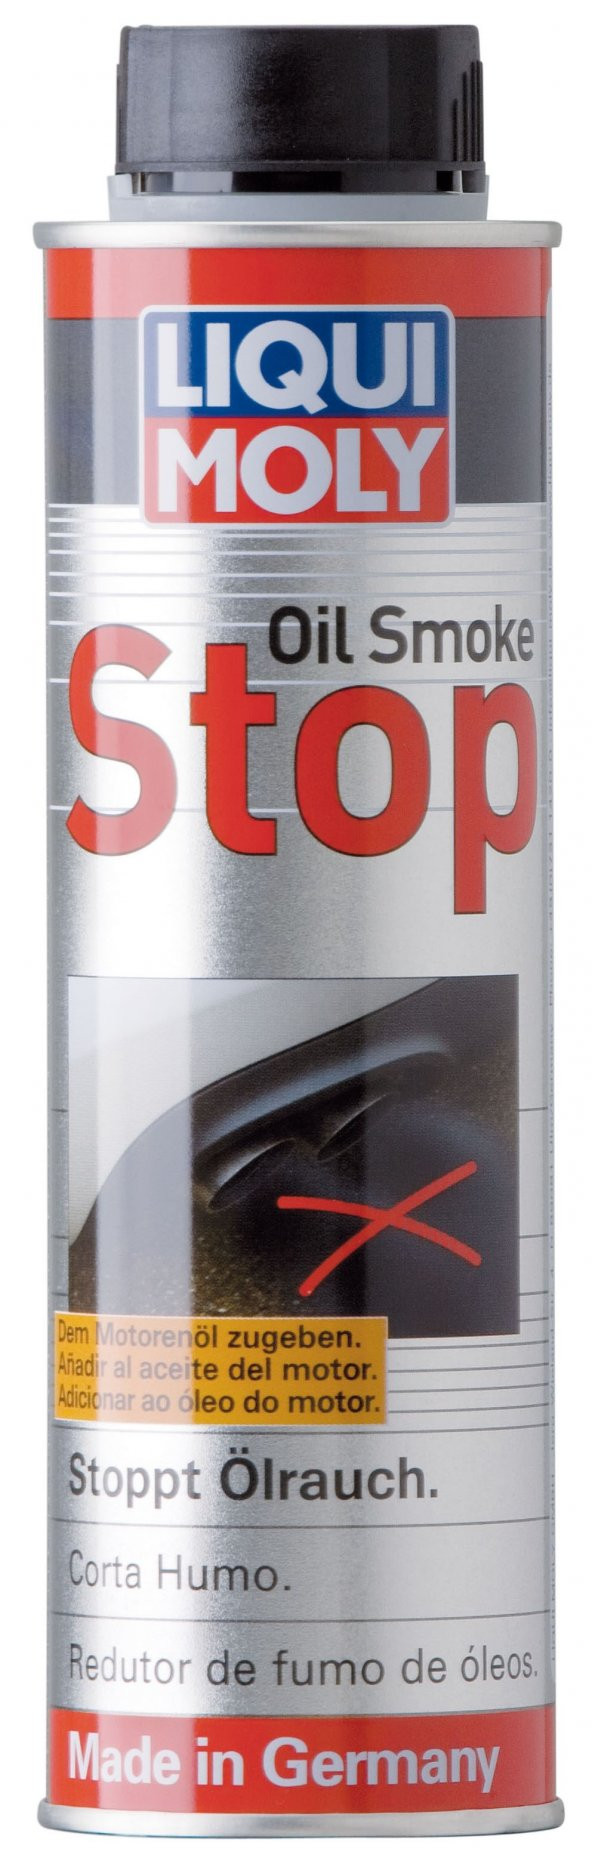 LIQUI MOLY OİL SMOKE STOP 300 ML